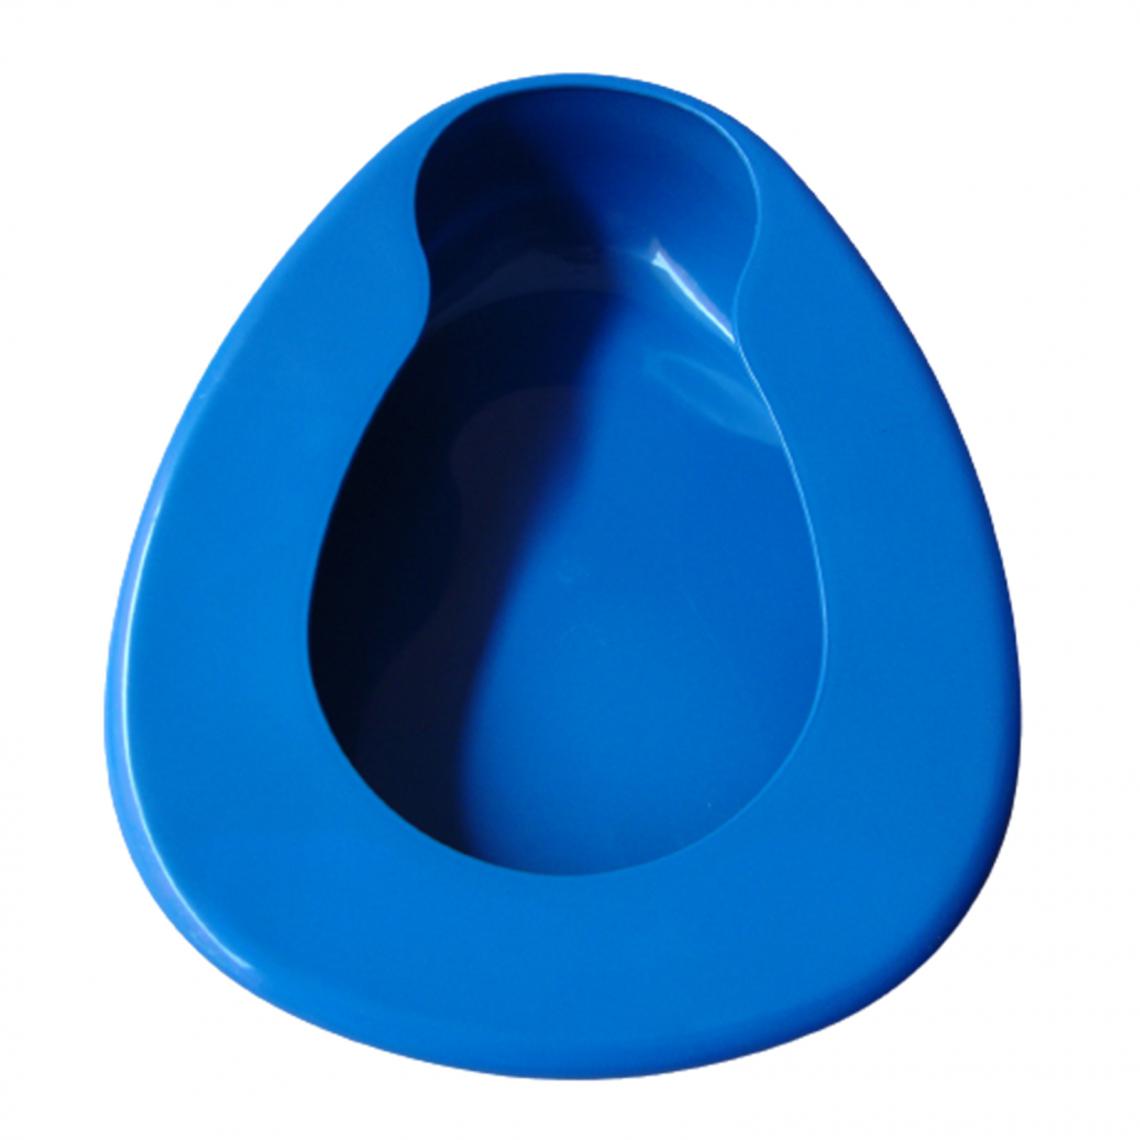 marque generique - Portable Bleu Bassine pour Femmes Hommes Personnes gées Femelle Mâle Alités Patient Maison Lit Pan - Autre appareil de mesure